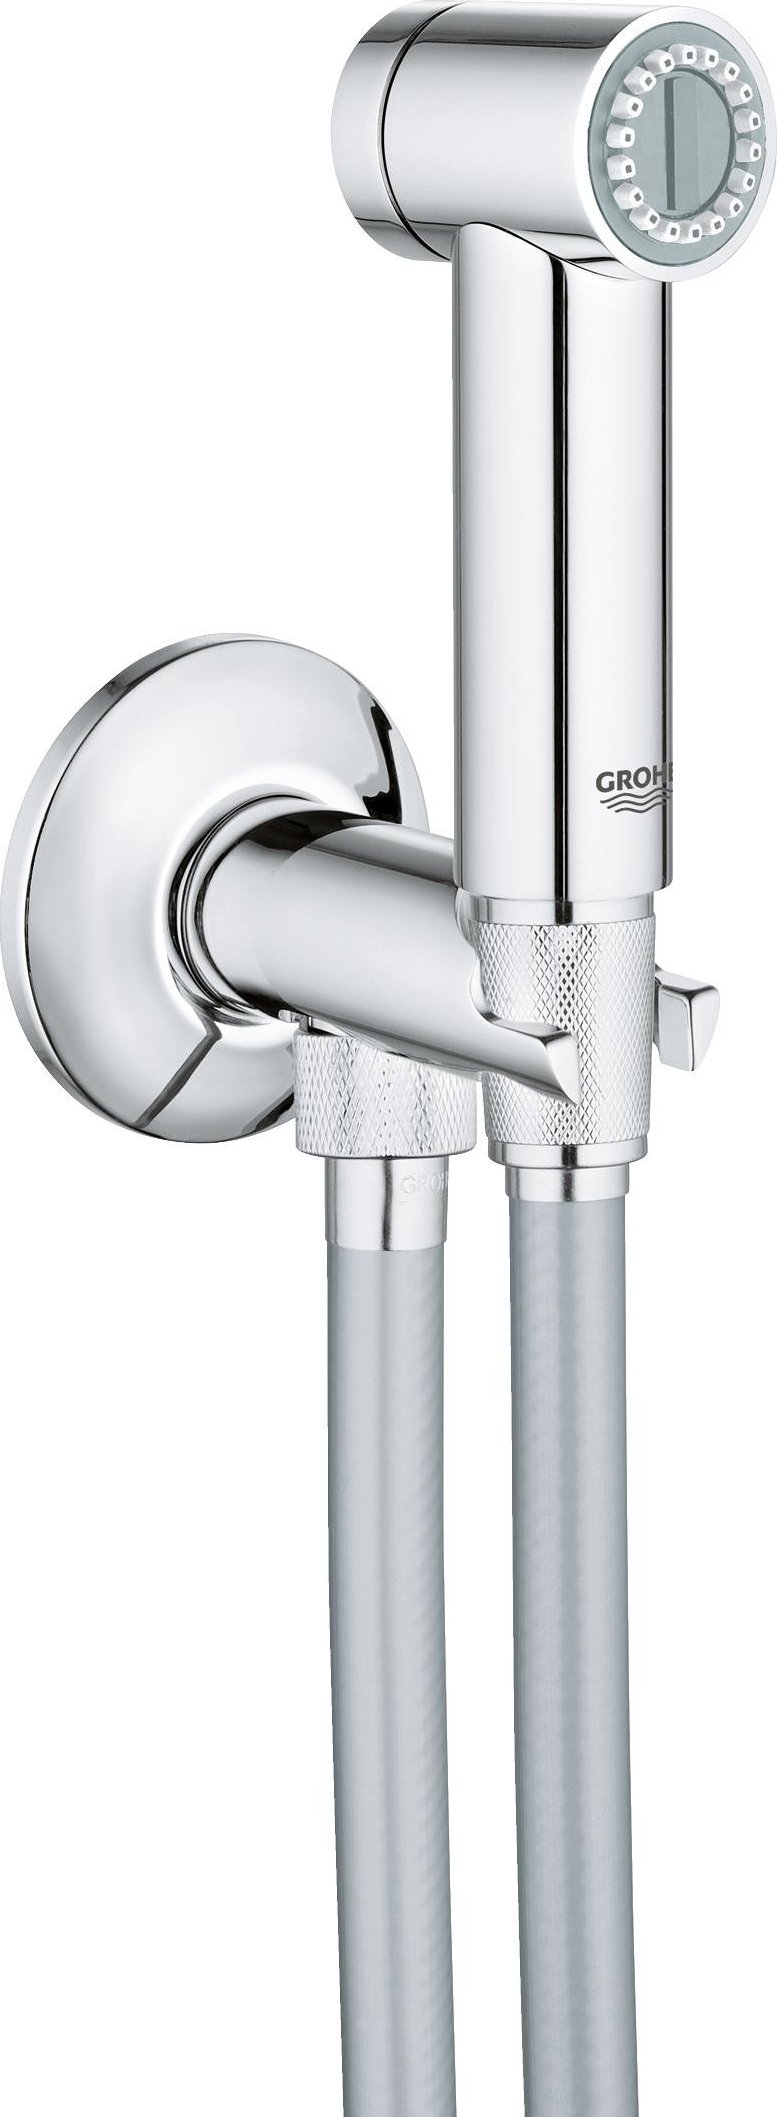 Гигиенический душ Grohe Sena Trigger Spray 26329000 со шлангом и держателем